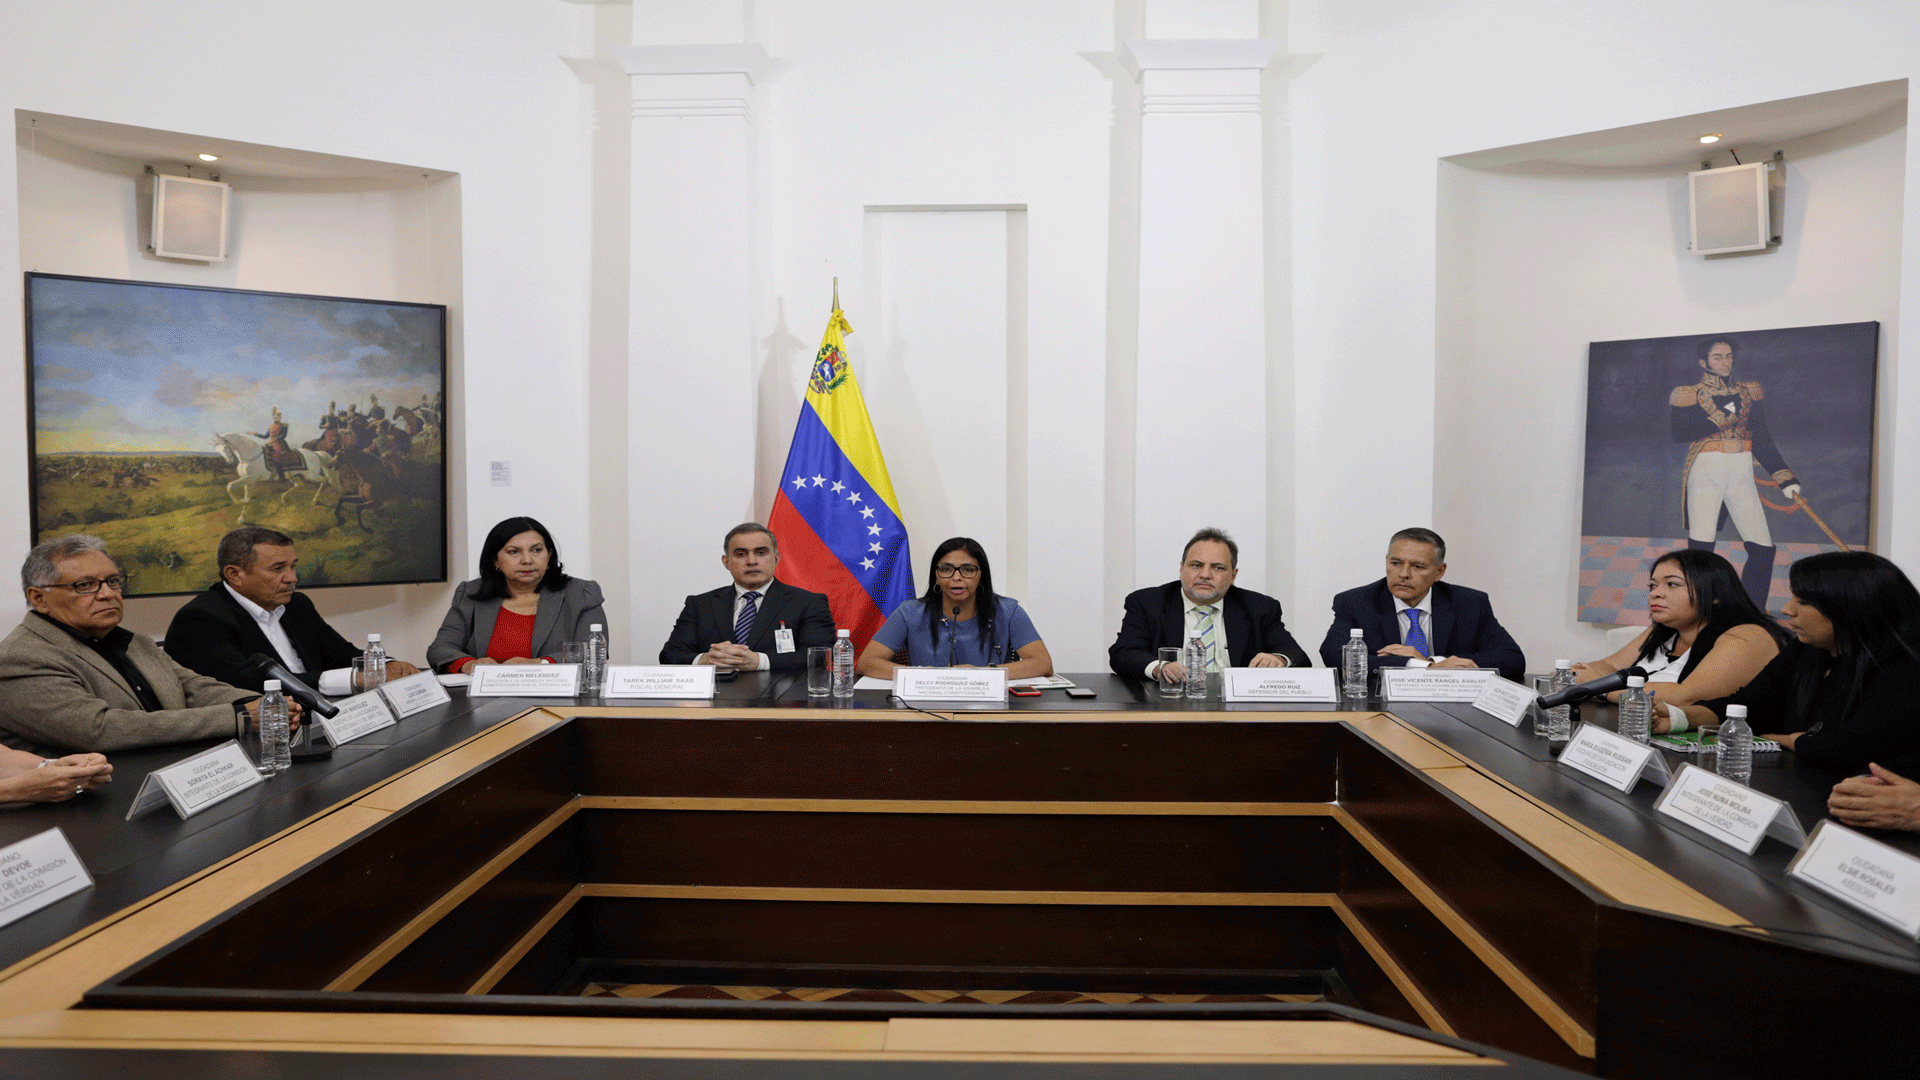 La Constituyente de Maduro arrebata las competencias a la Asamblea Nacional opositora